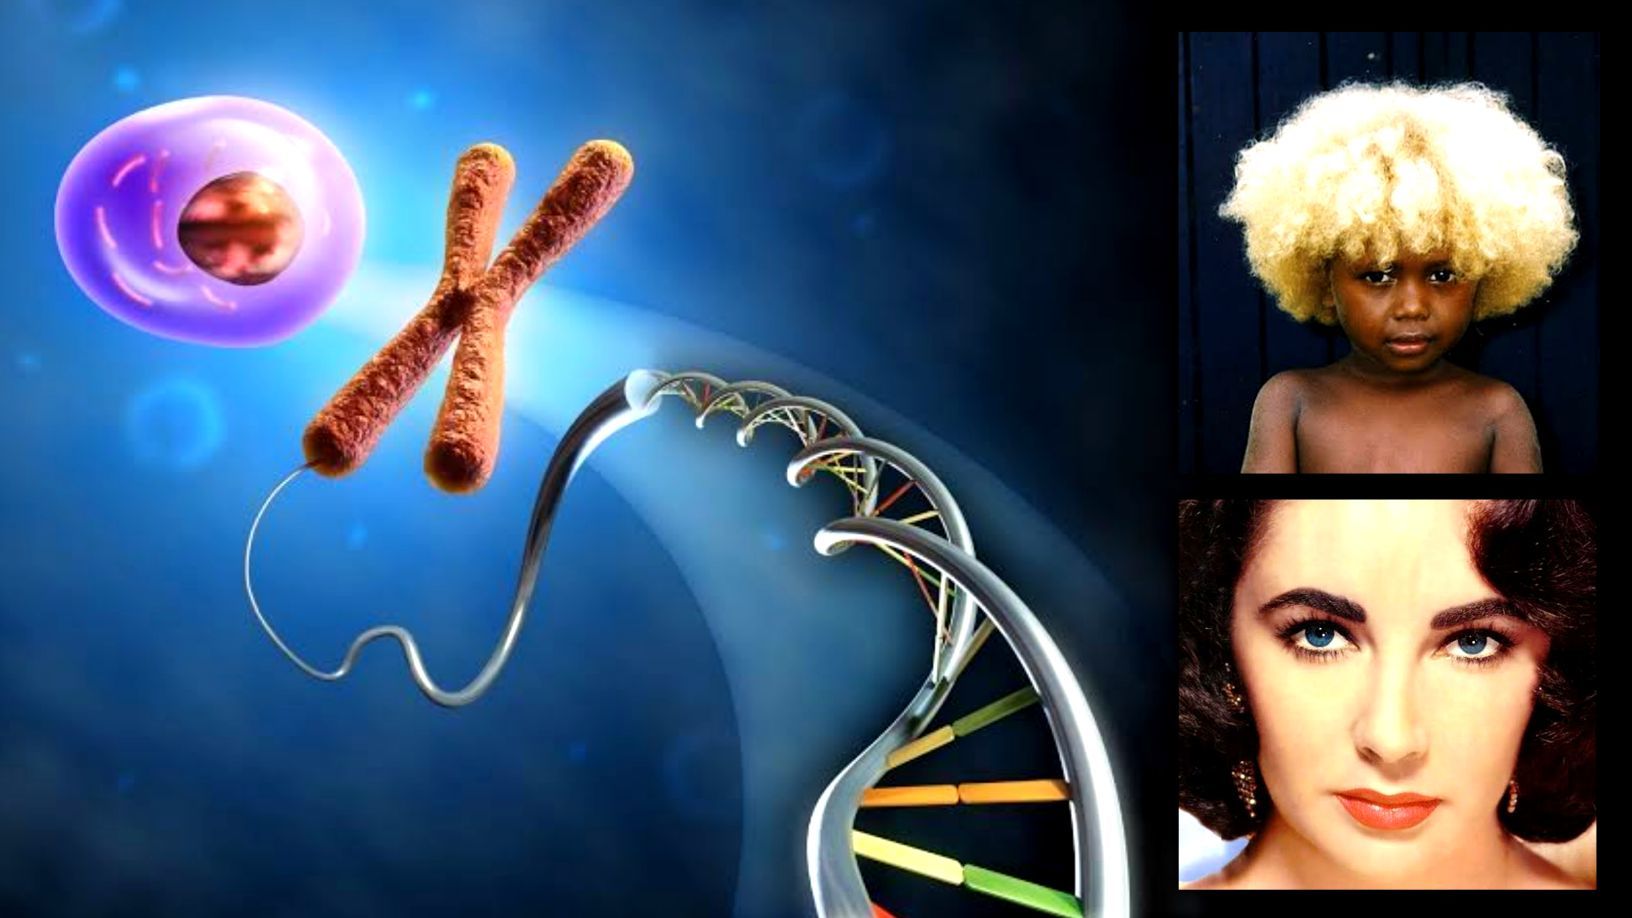 26 dīvainākie fakti par DNS un gēniem, par kuriem jūs nekad neesat dzirdējuši 1